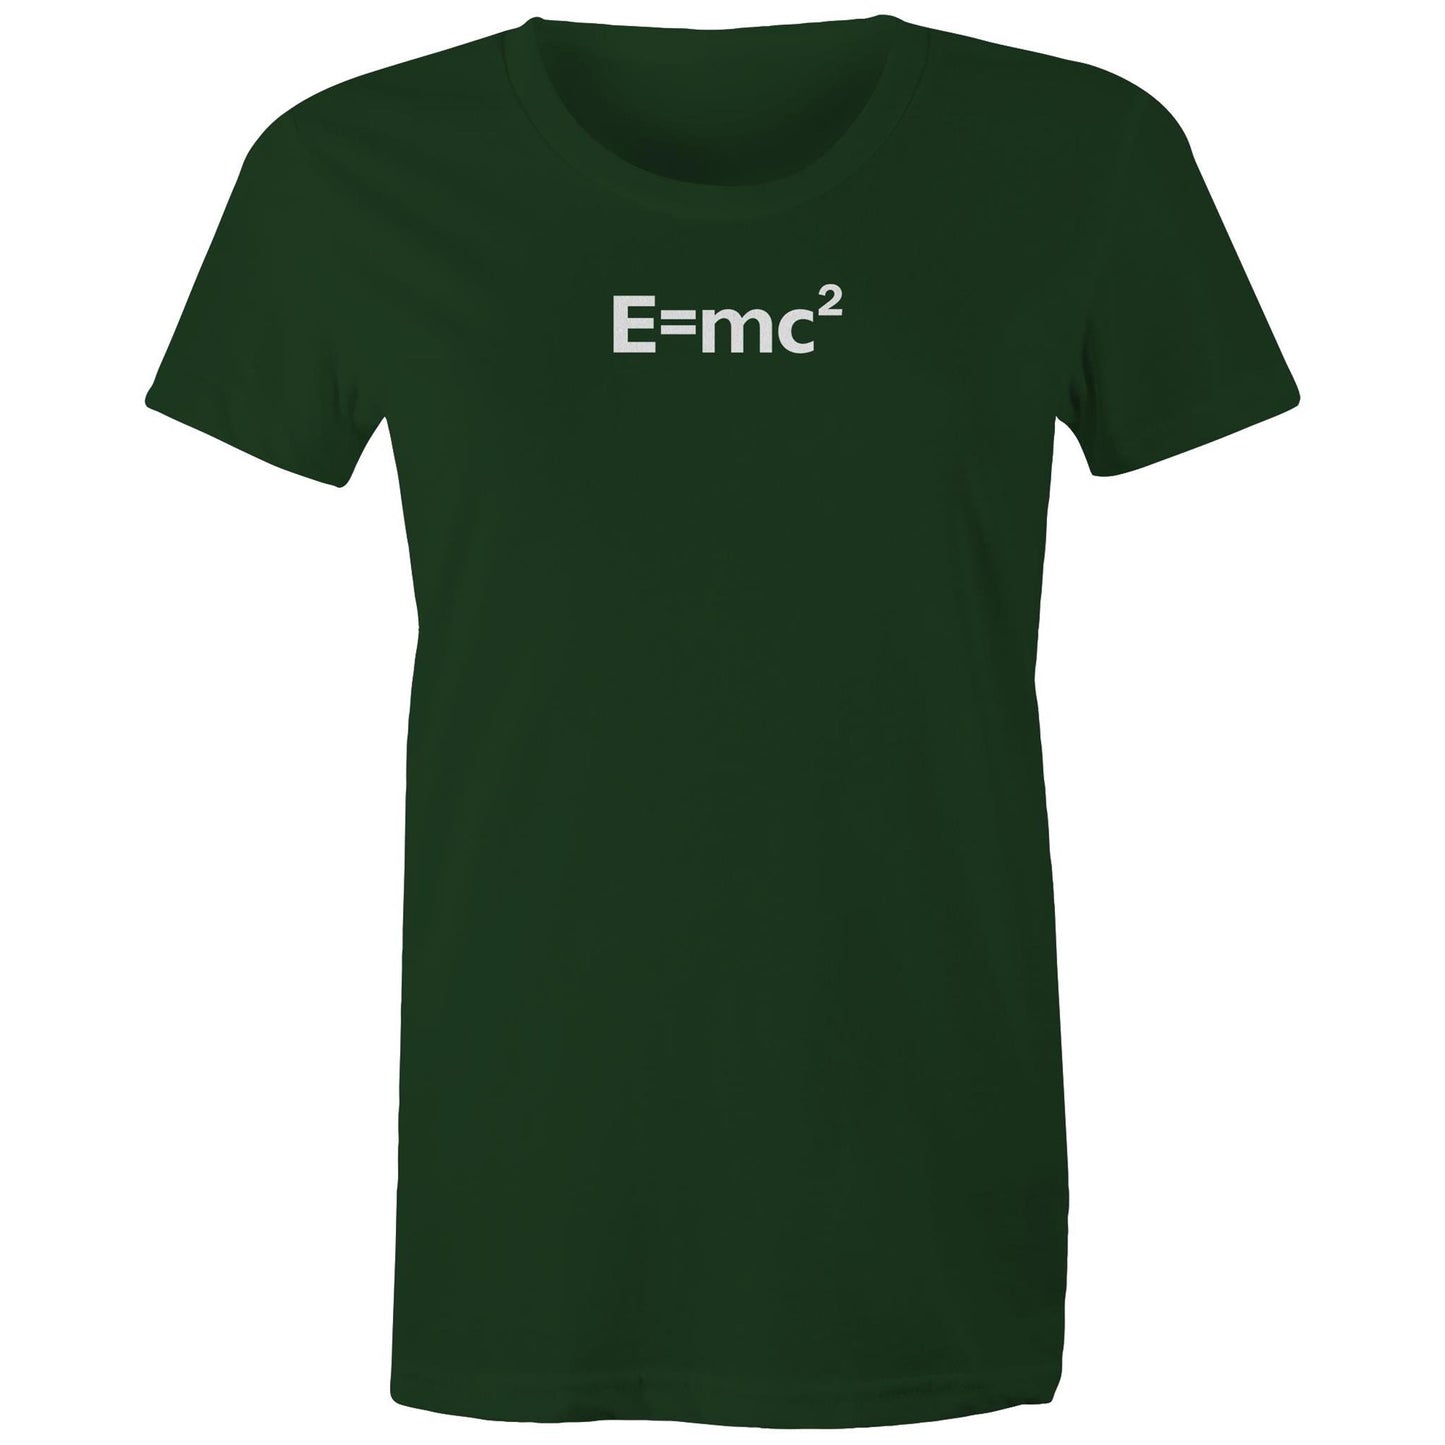 E=mc2 T Shirts for Women